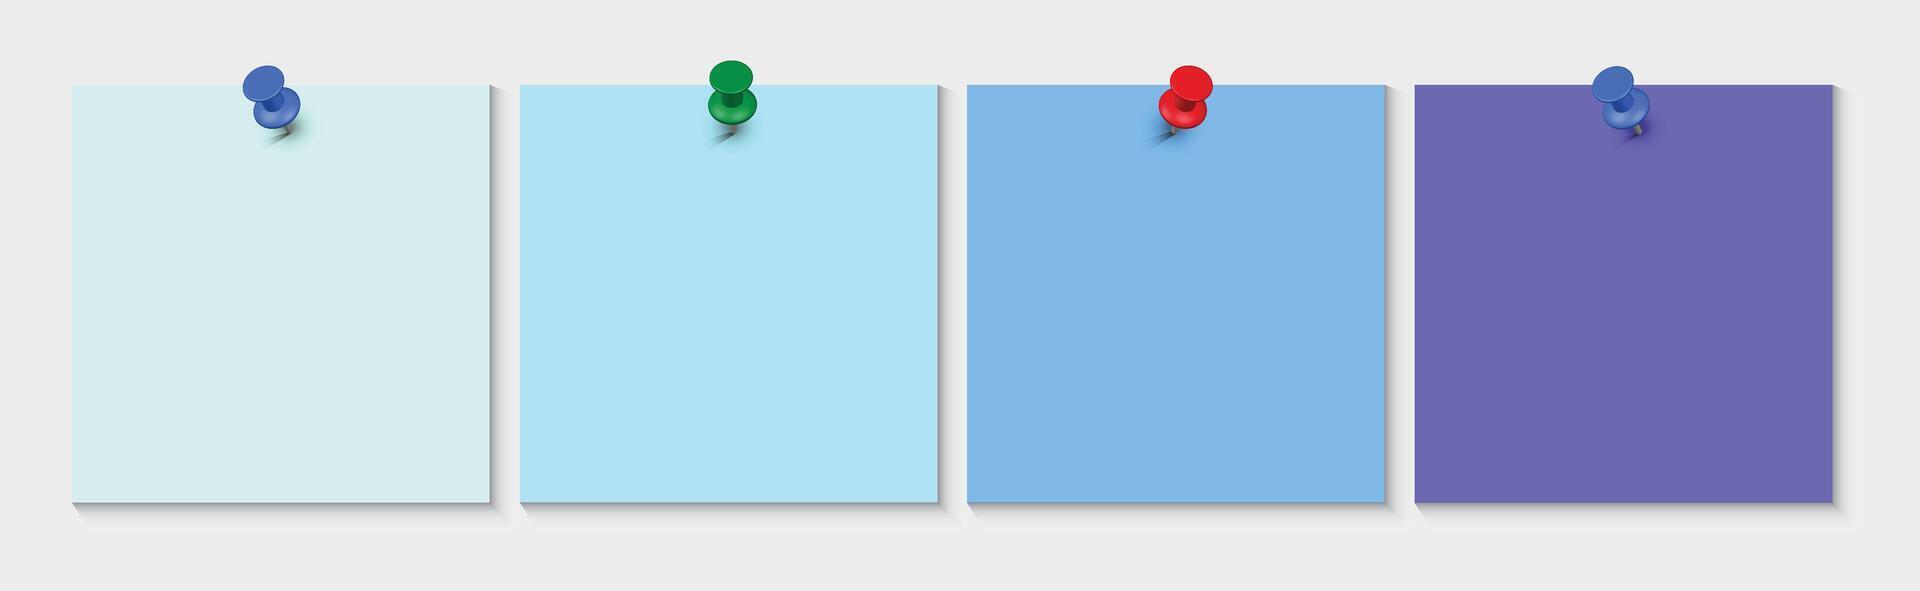 verzameling van verschillend gekleurde lakens van Notitie papieren met gekruld hoek, klaar voor uw bericht vector